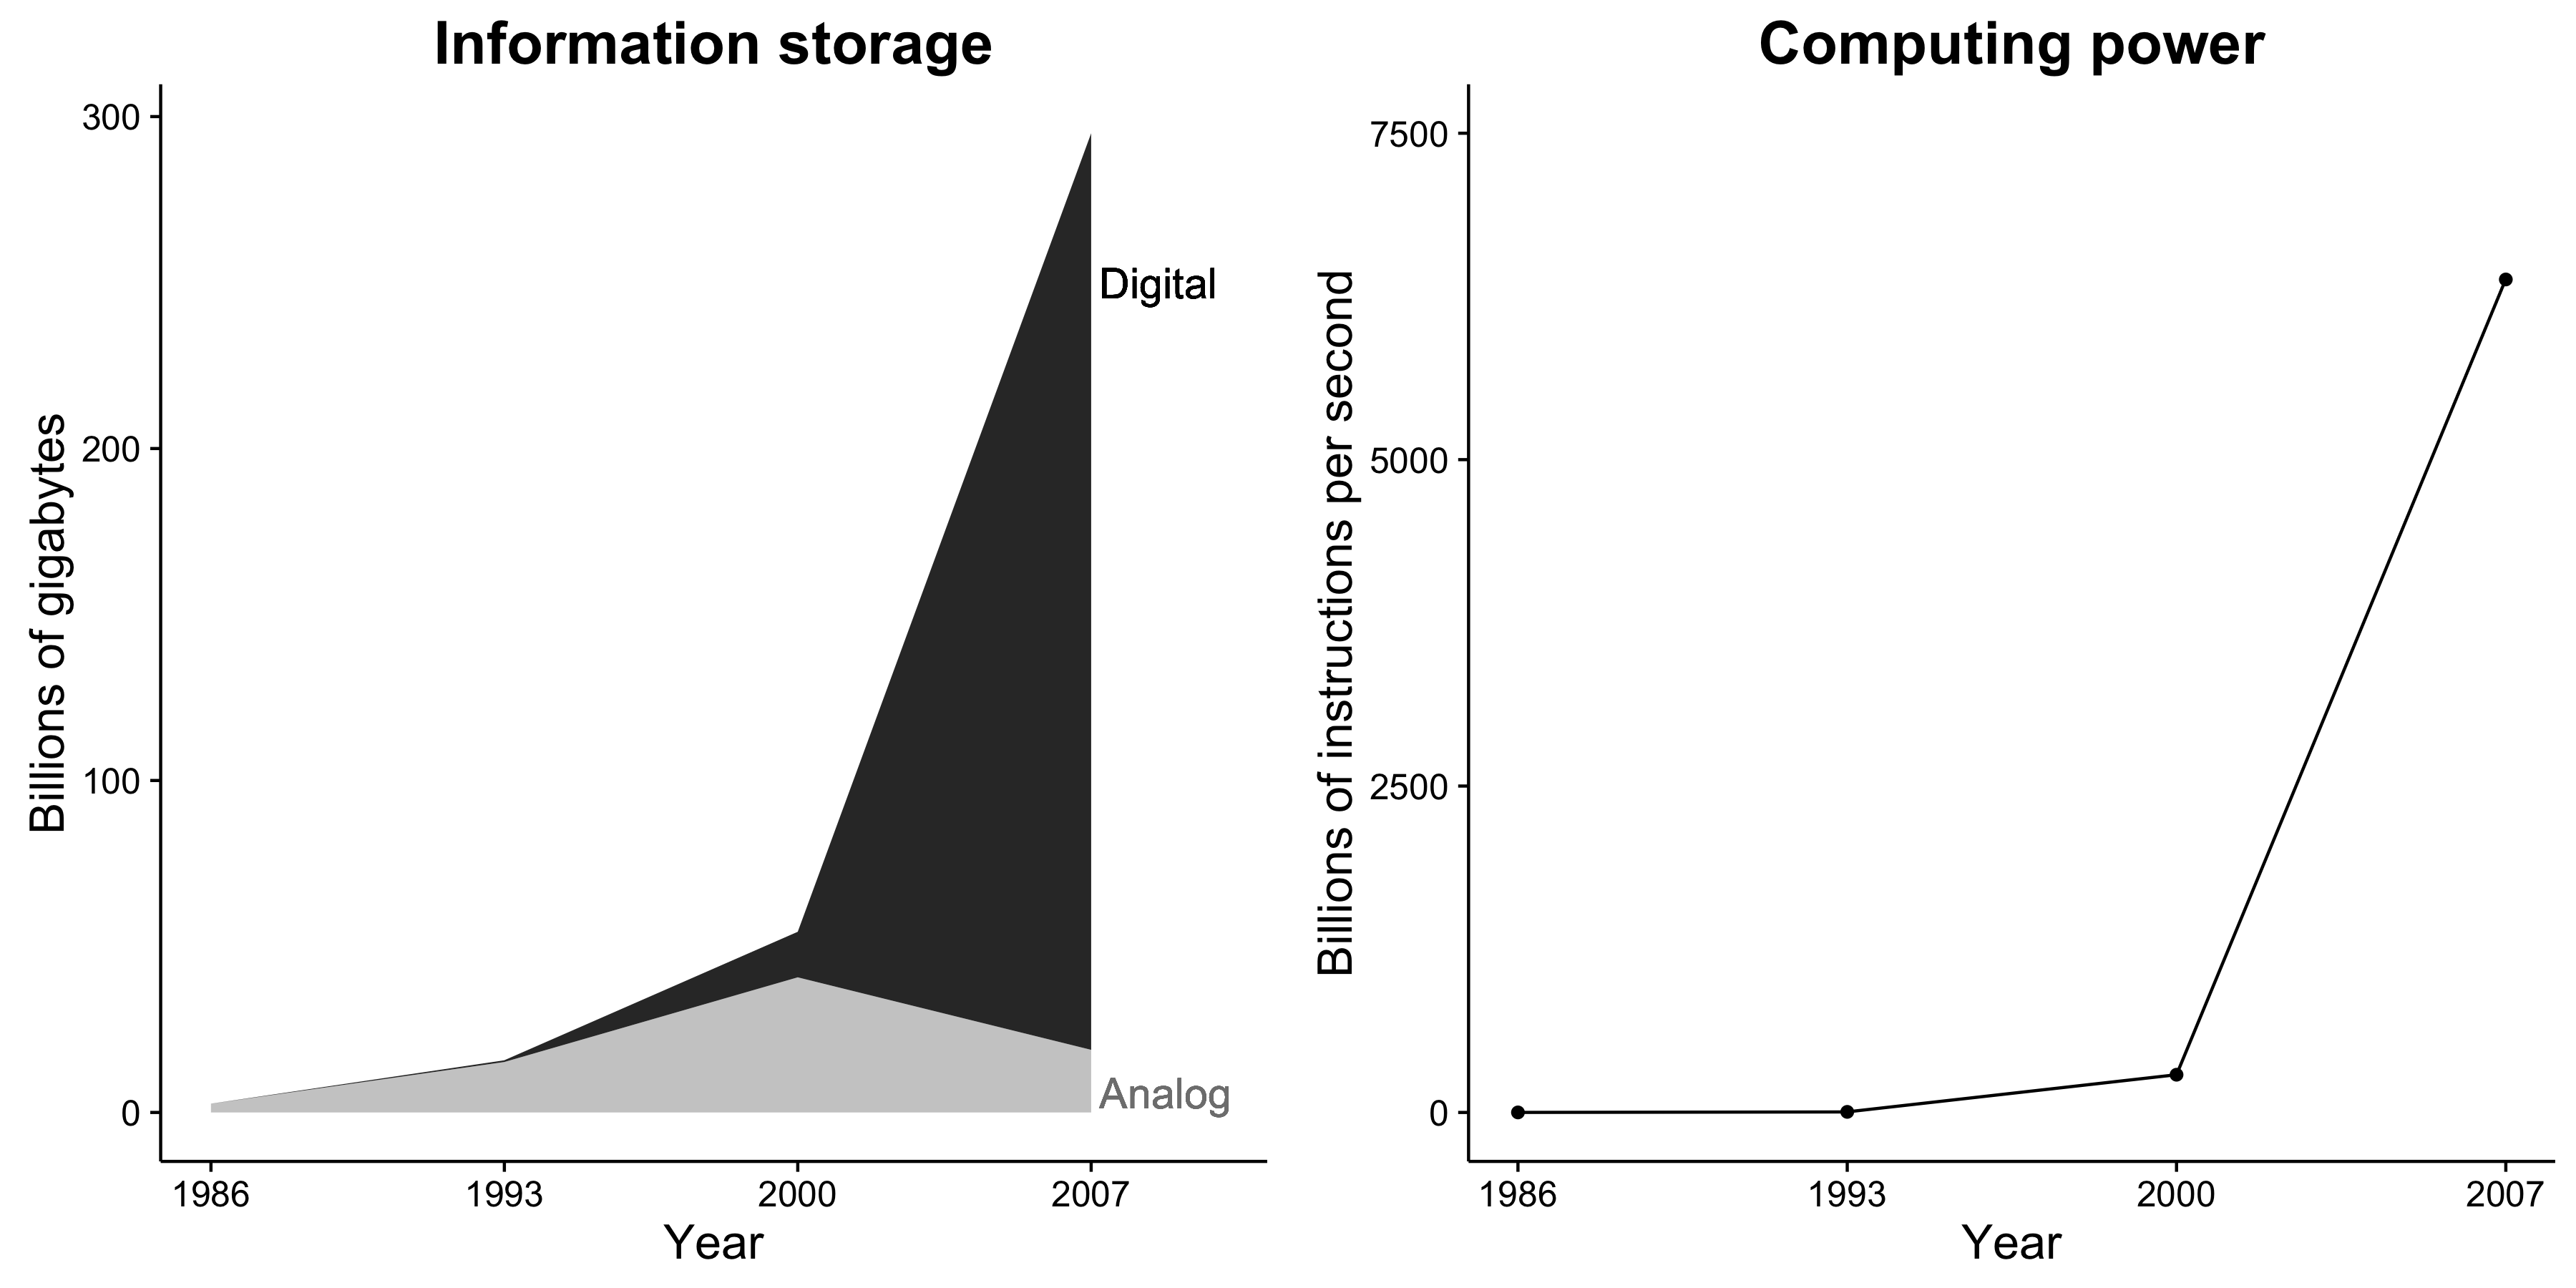 圖1.1：信息存儲能力和計算能力正在急劇增加。此外，信息存儲是現在幾乎完全數字（希爾伯特和洛佩茲2011年）。這些變化為社會研究者令人難以置信的機會。